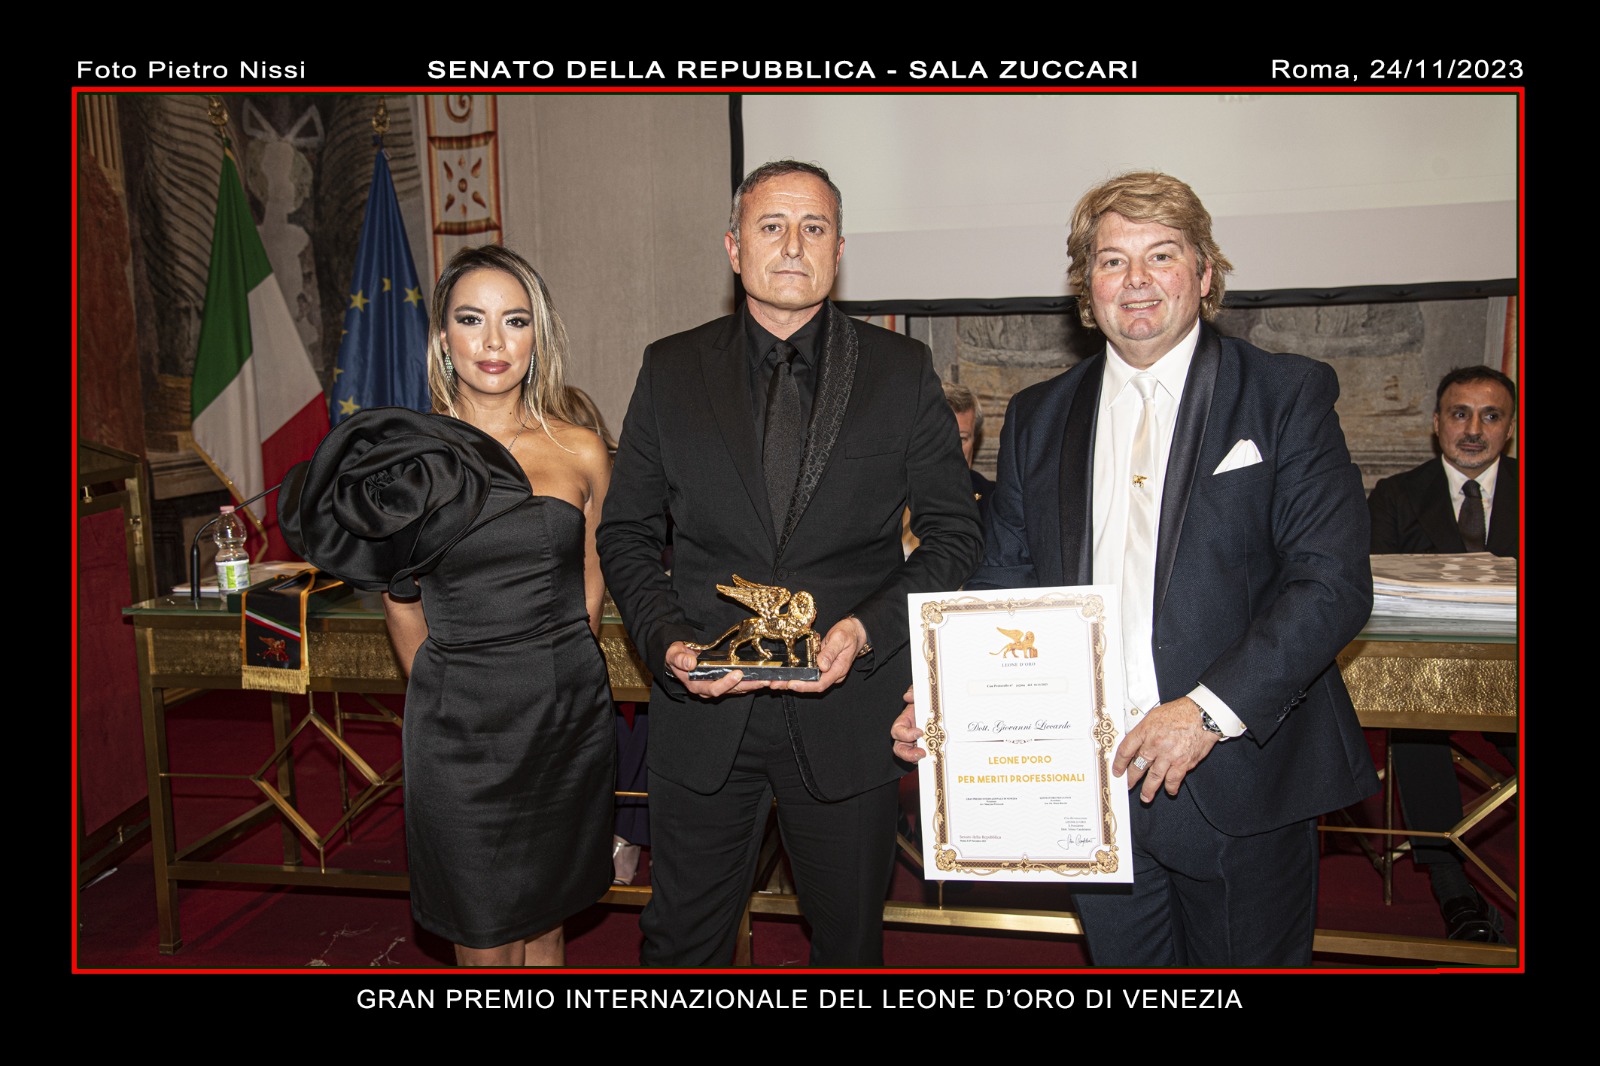 Giovanni Liccardo, fondatore e amministratore delegato di Lever Touch, premiato con il Leone d'Oro di Venezia alla carriera imprenditoriale